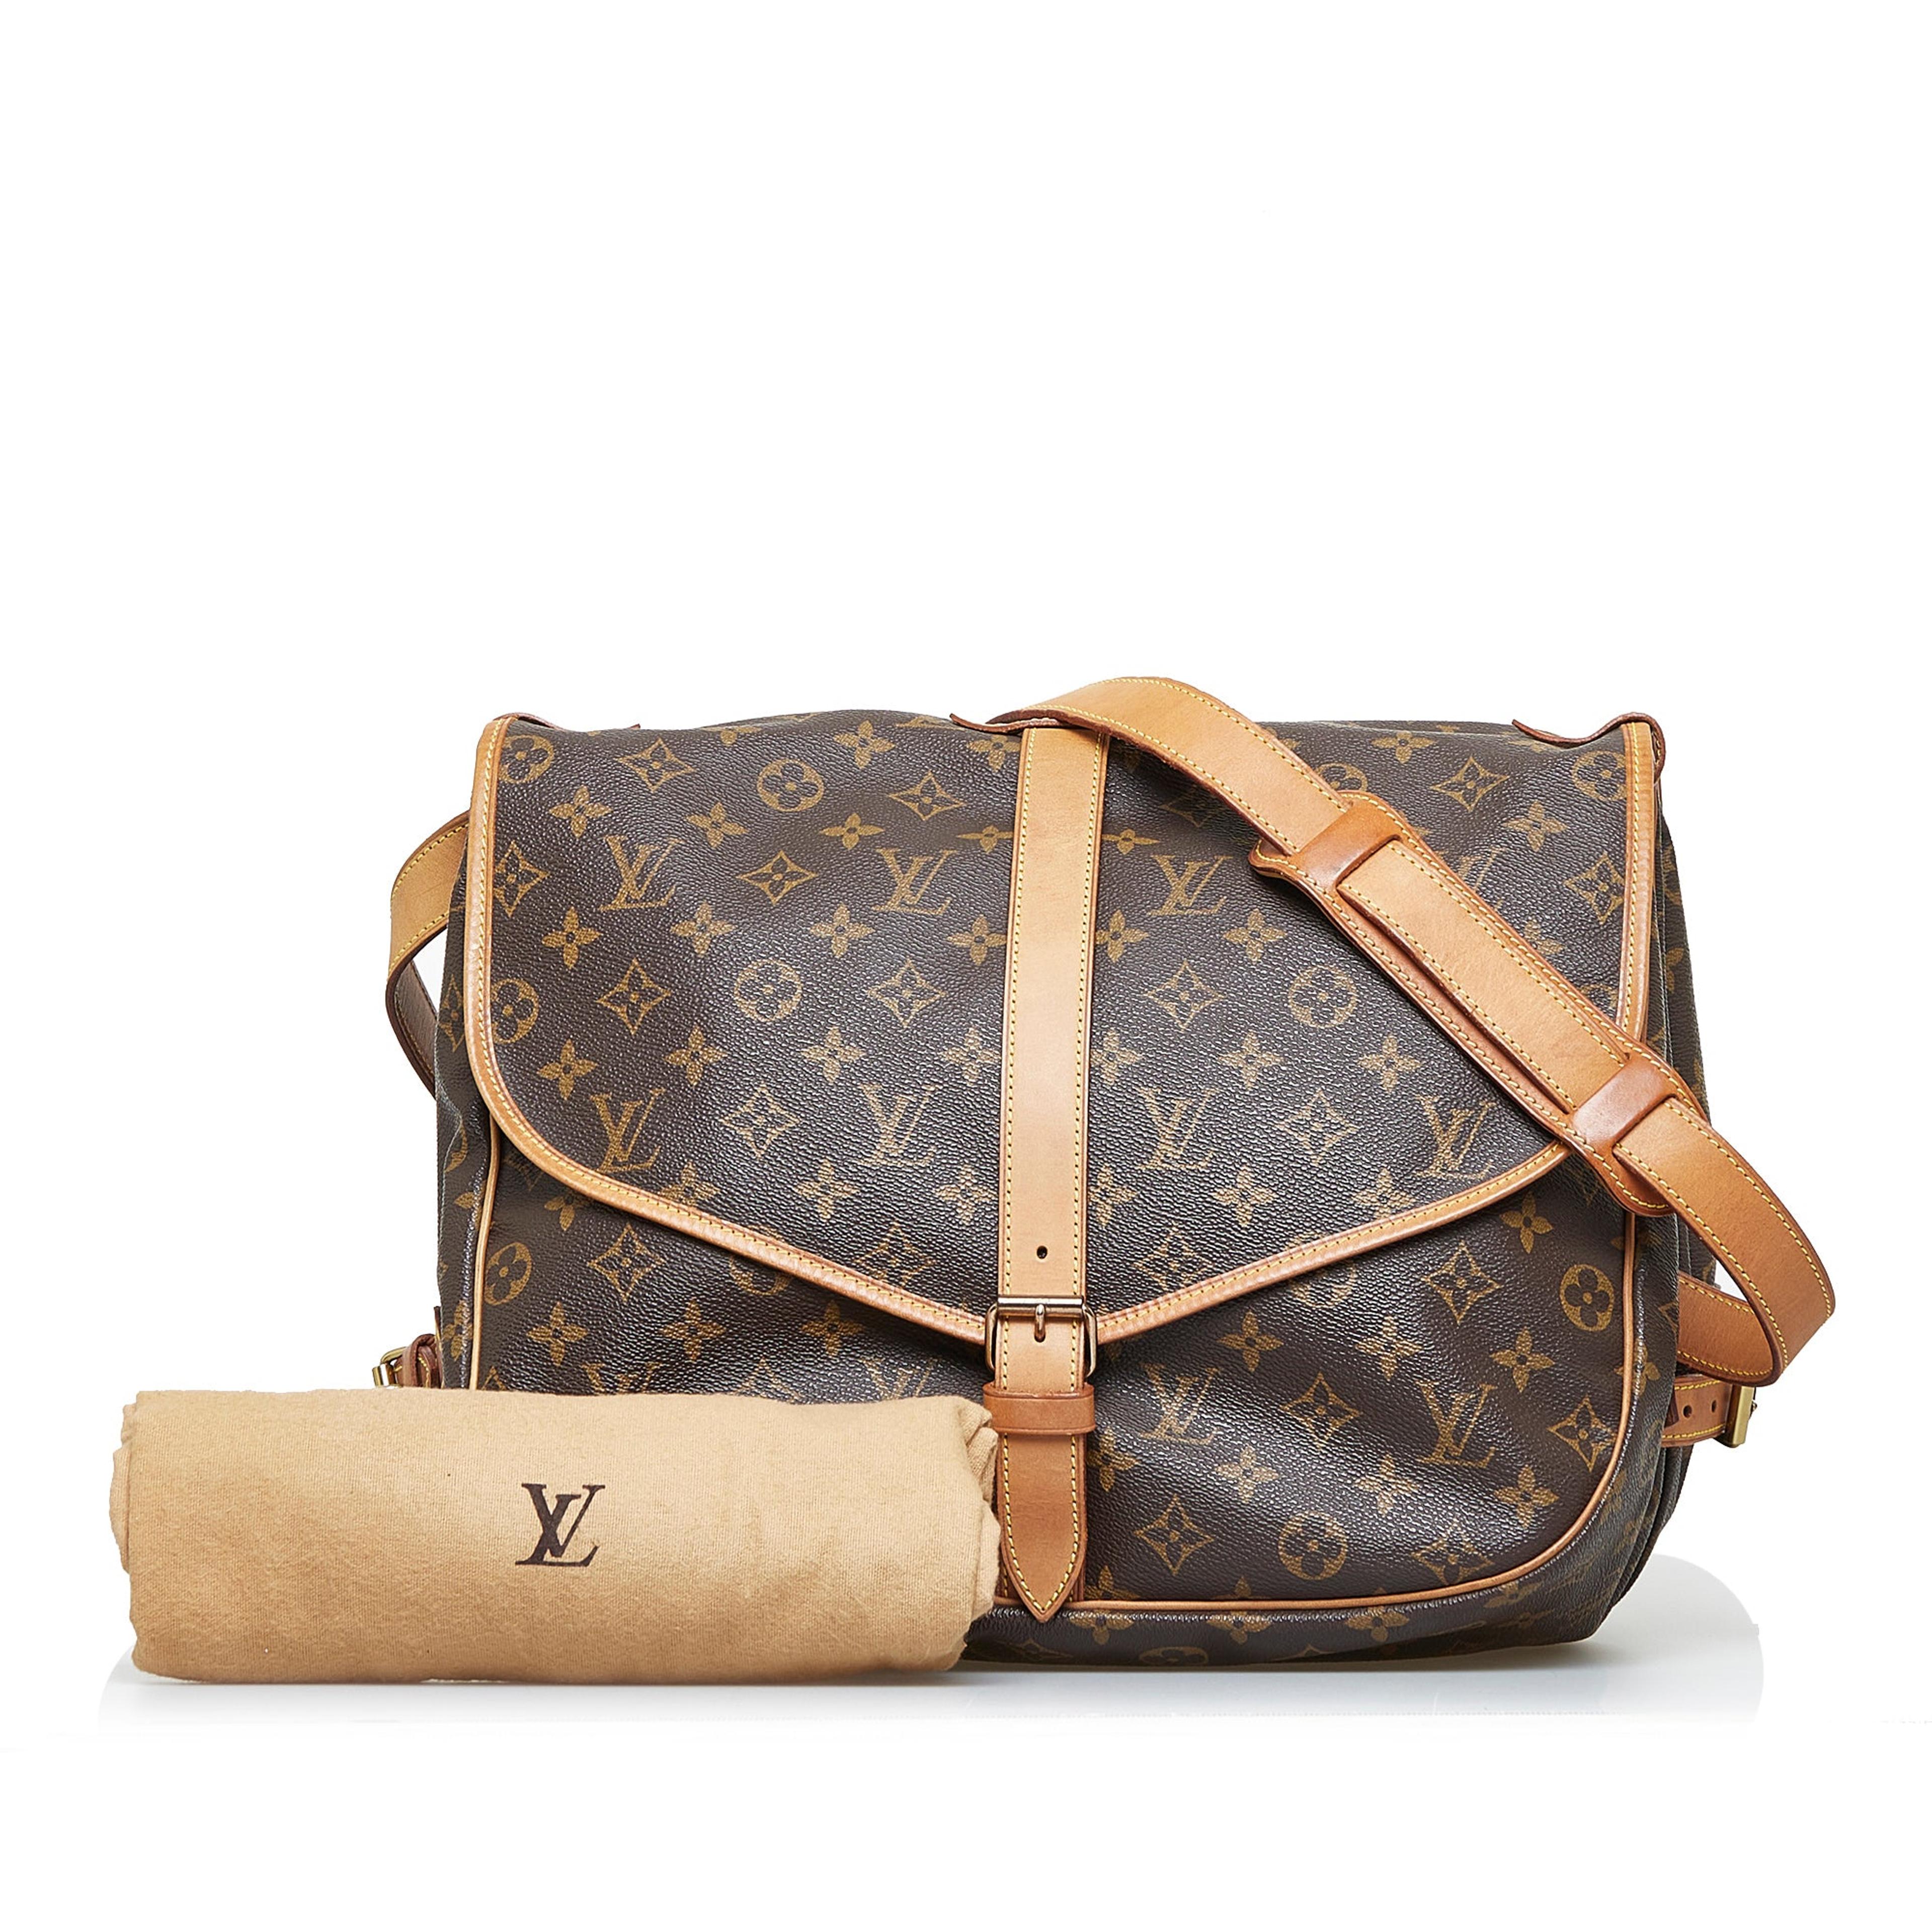 Louis Vuitton Expandable Messenger Bag